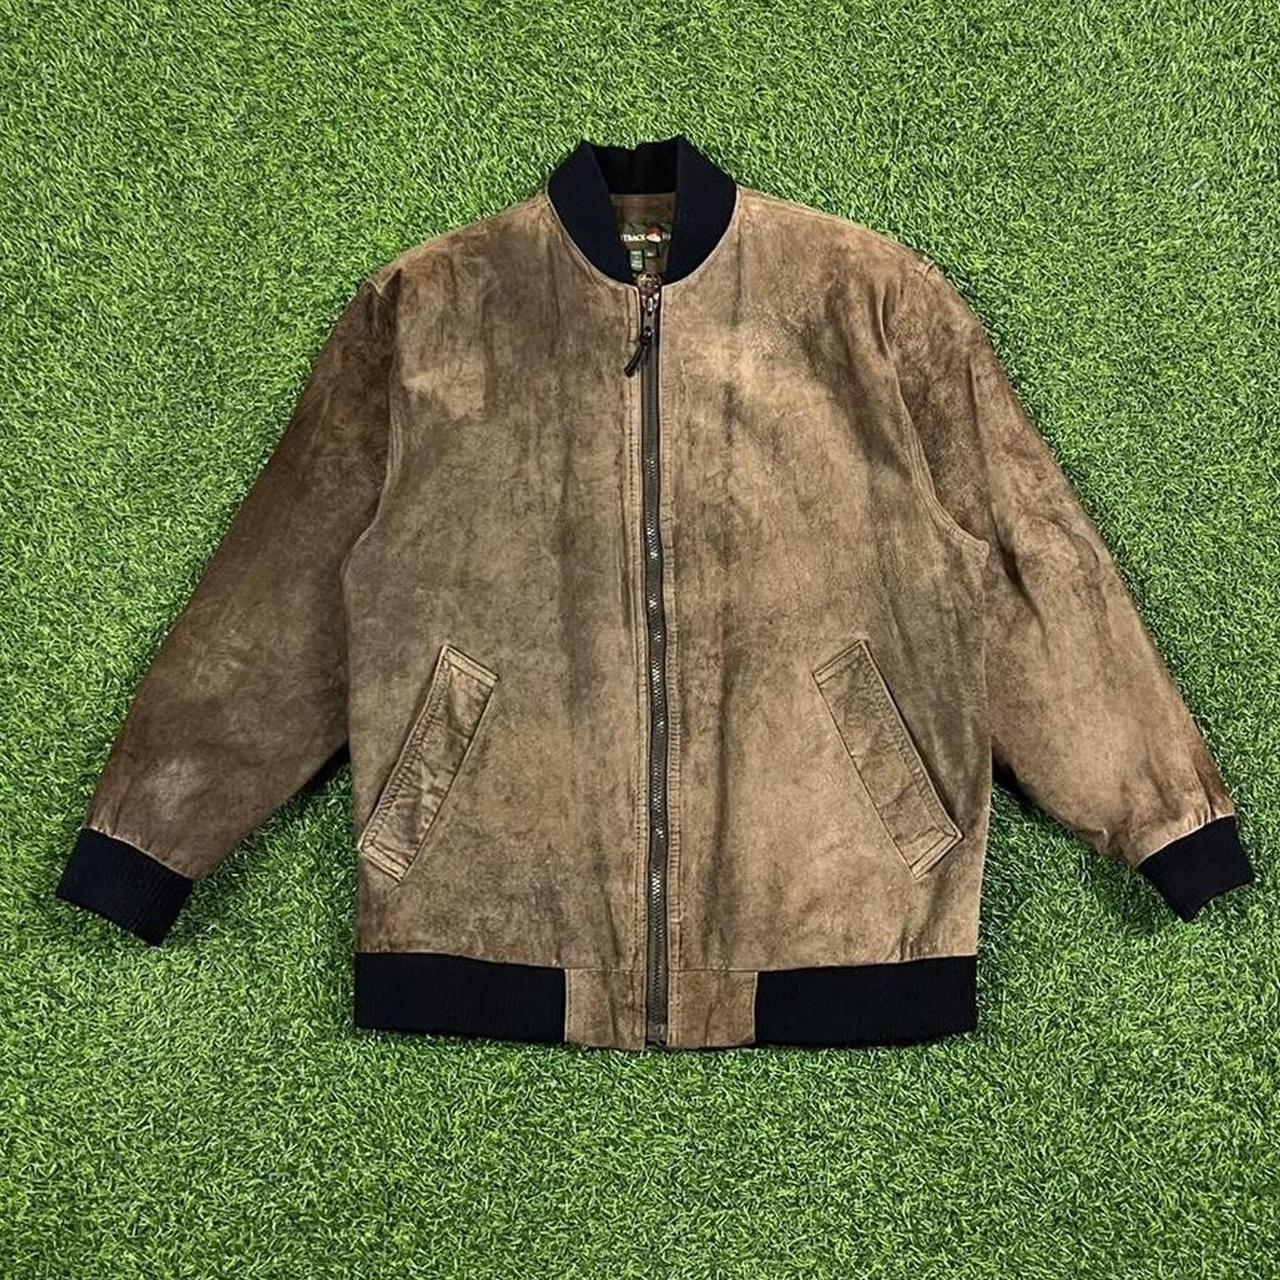 Vintage brown leather bomber jacket G3 earth tone... - Depop